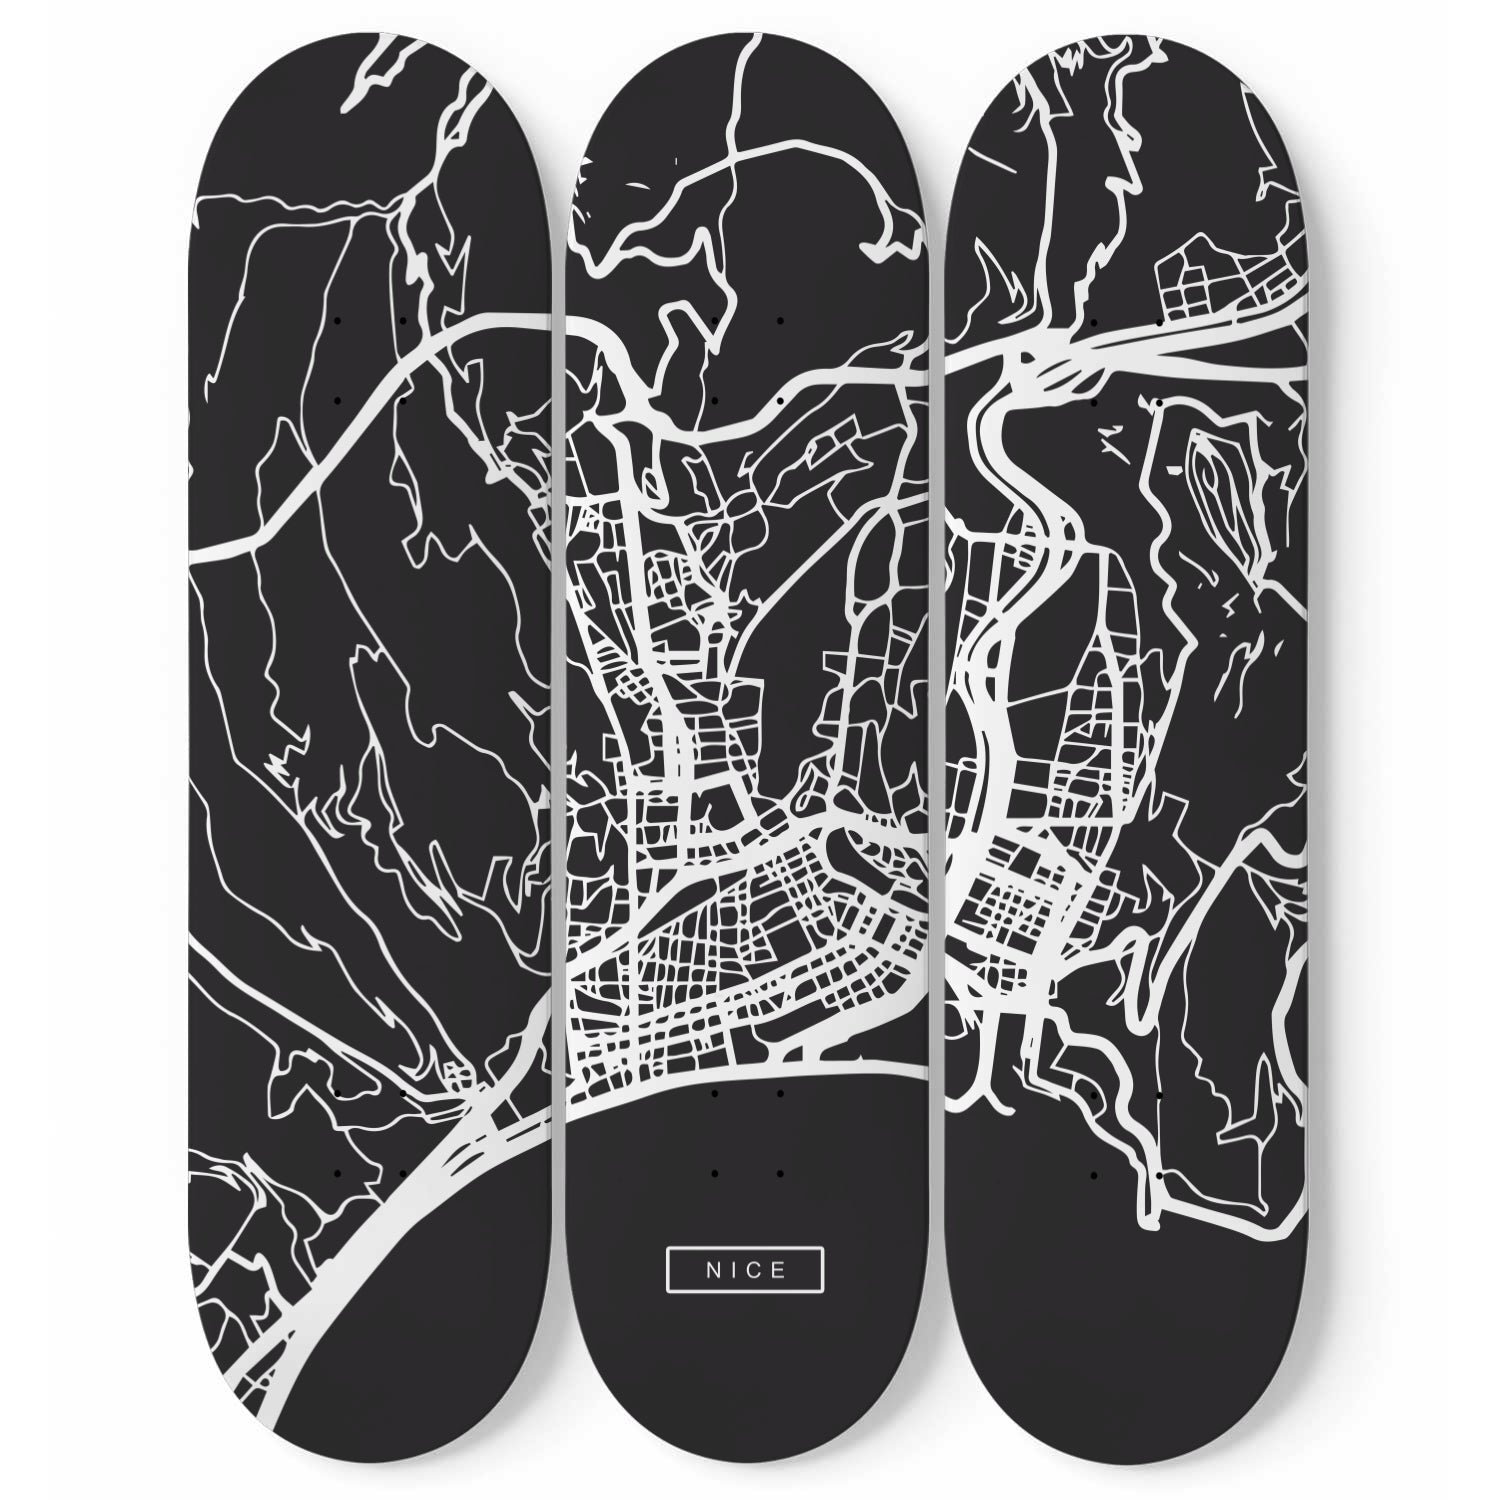 City Maps Nice (FRA) - Skater Wall